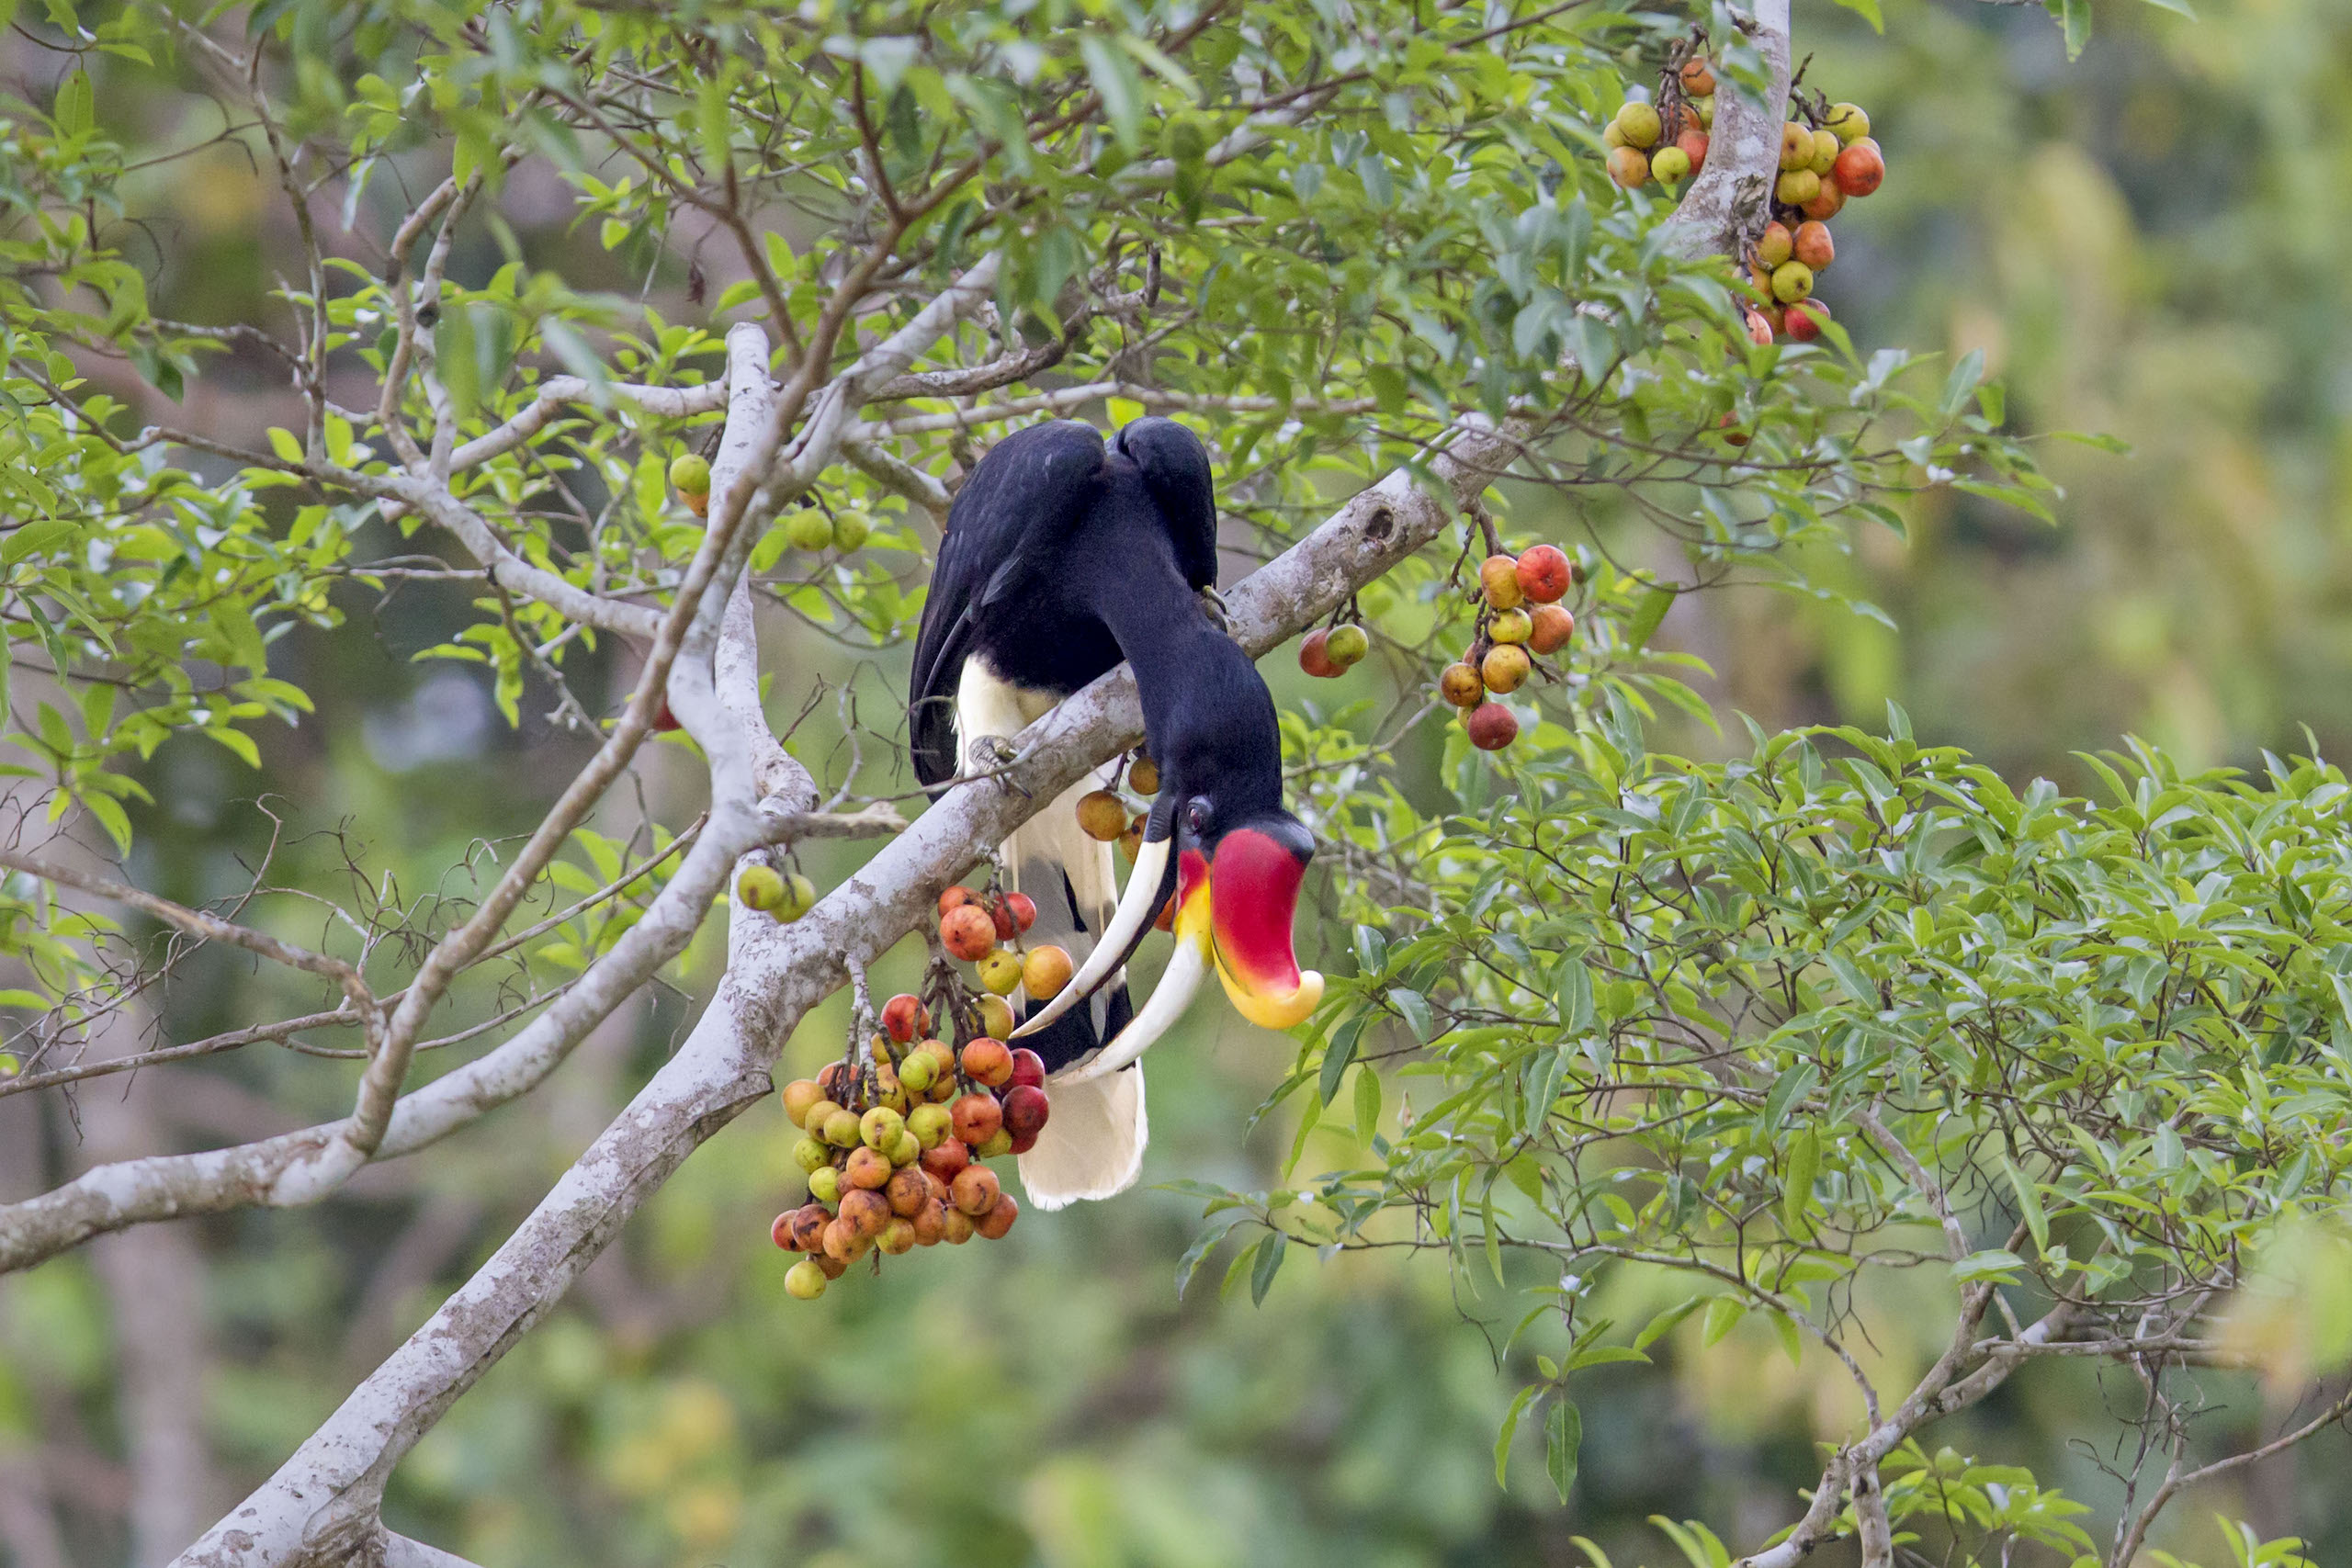 <p>Nosorożec dzioborożec żeruje na figach na malezyjskim Borneo. Sadzenie drzew figowych na wyspie, która została intensywnie wylesiona pod plantacje palm olejowych, mogłoby przywrócić ważną część ekosystemu lasów deszczowych. (Zdjęcie: FLPA / Alamy)</p>